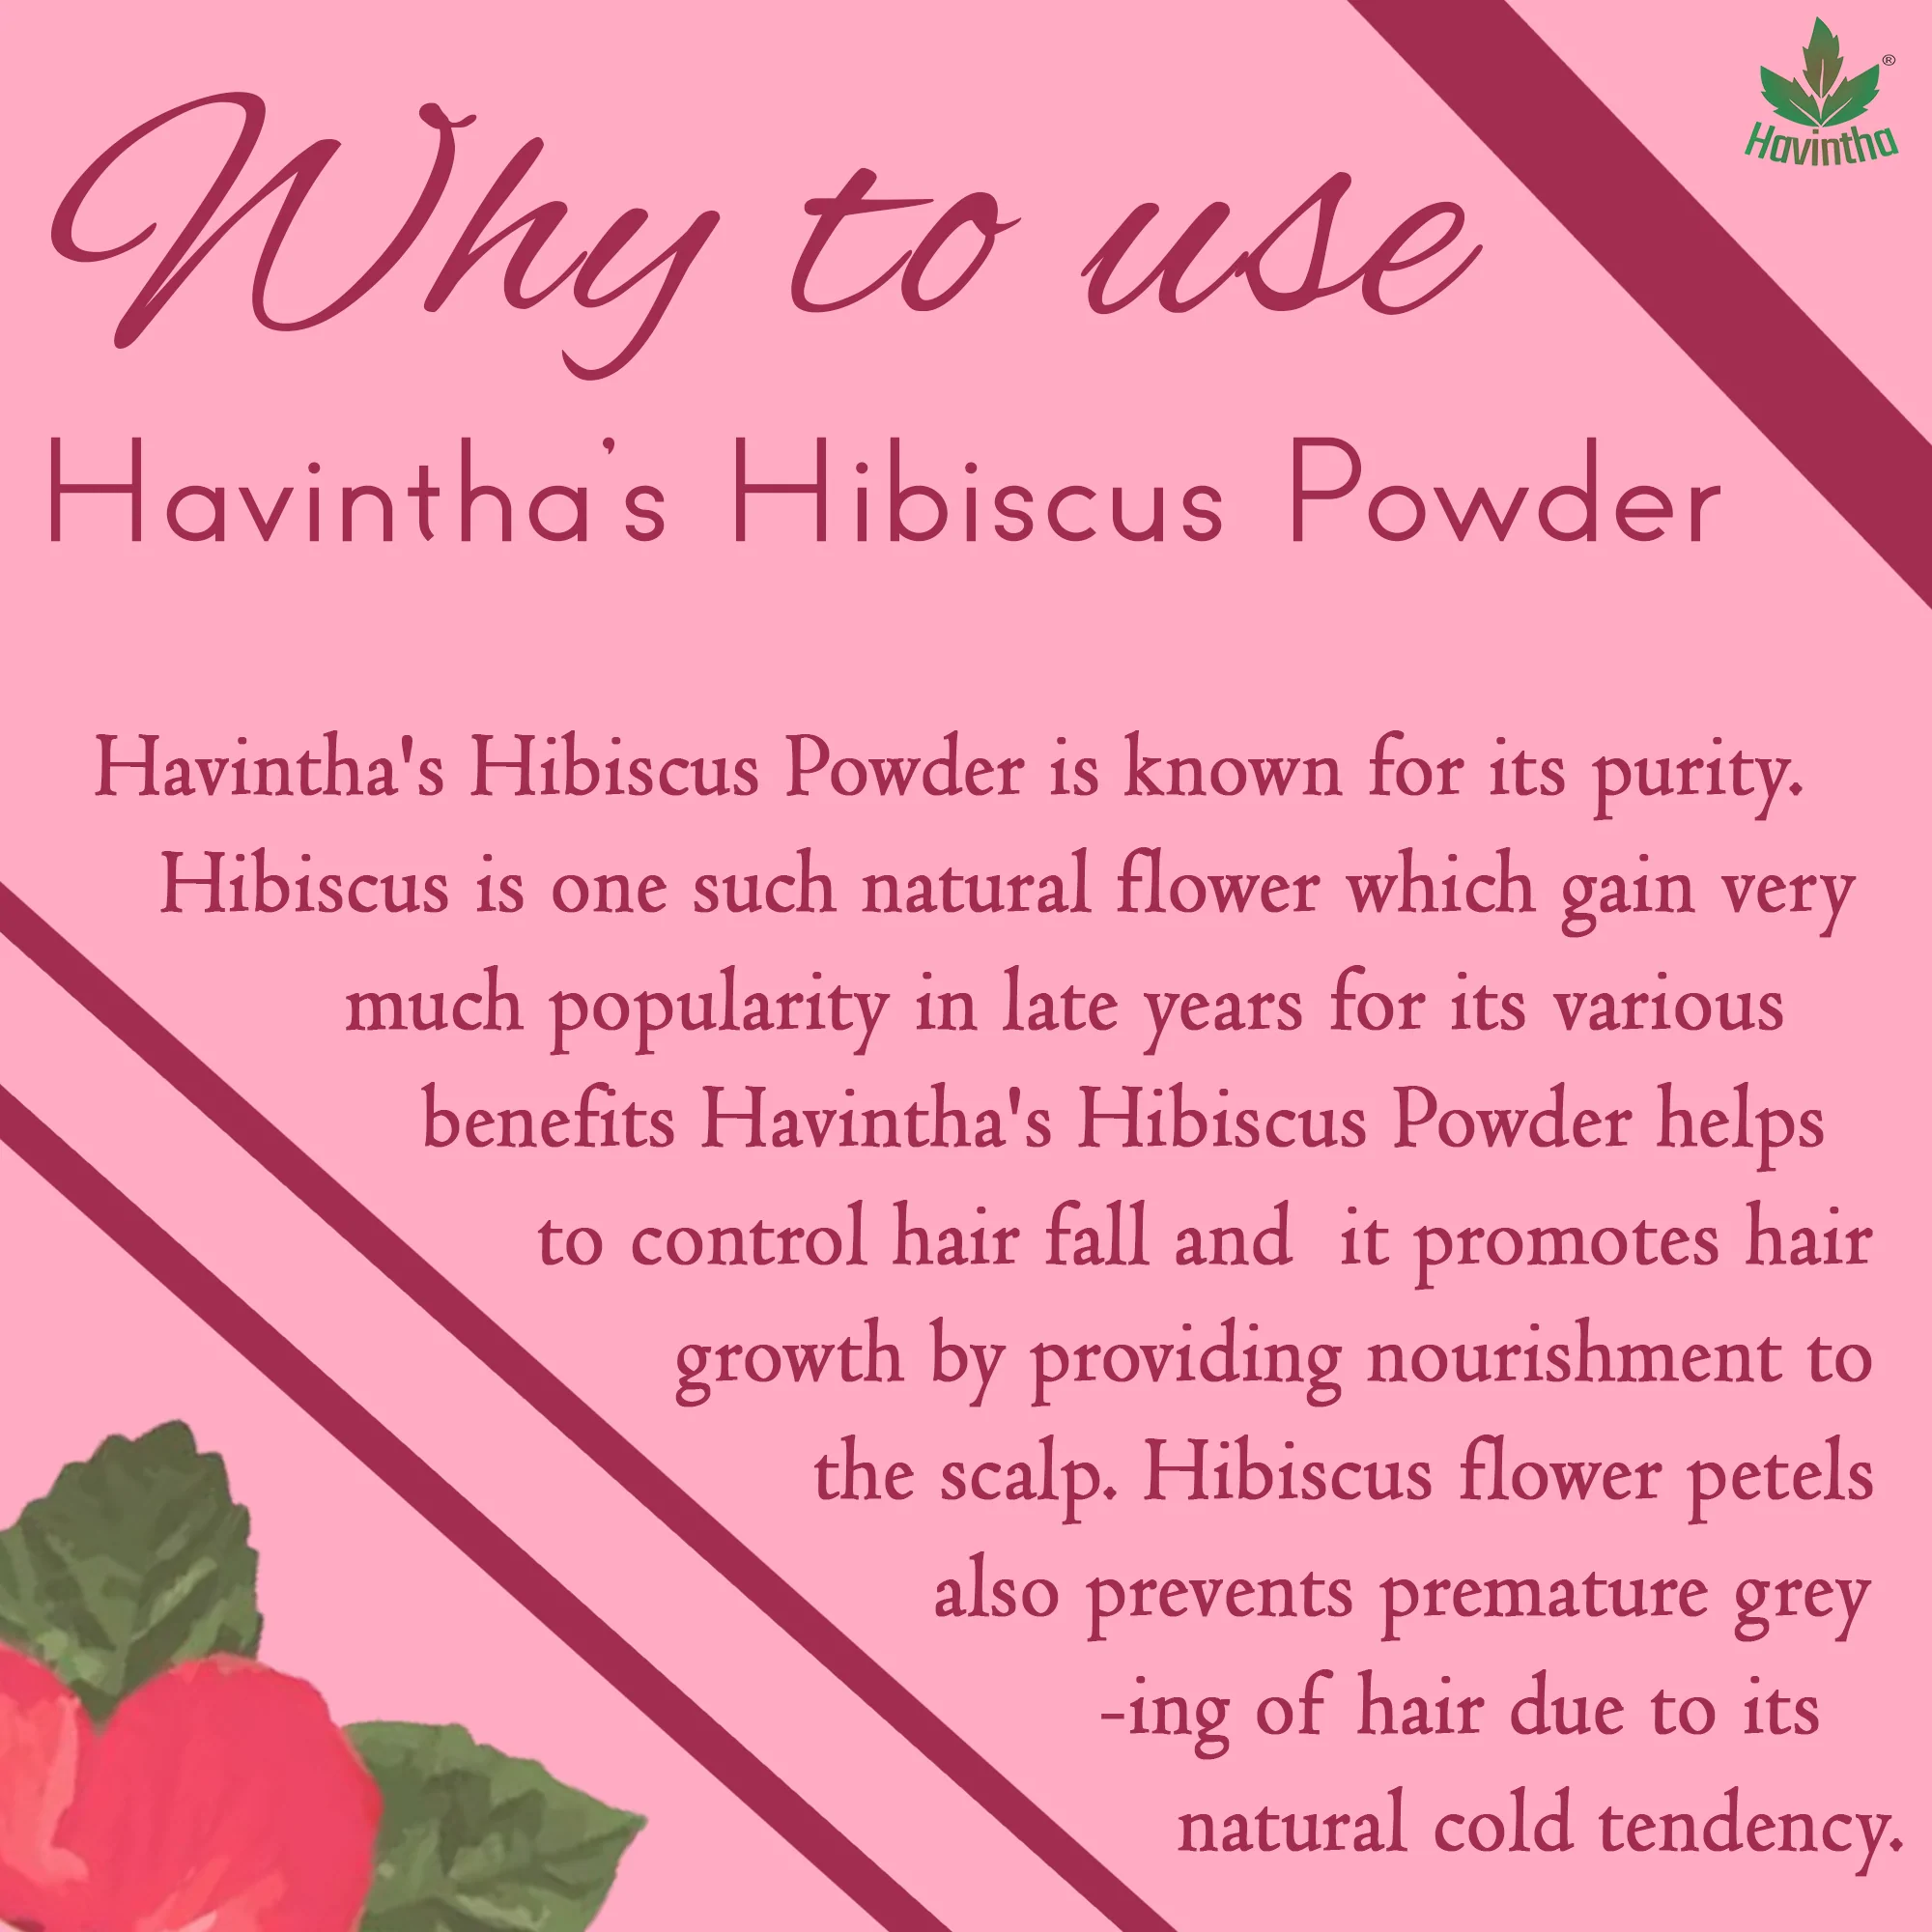 Natural Hibiscus Powder For Hair Growth & Prevents Hair Fall – 227g –  Ritika Creations